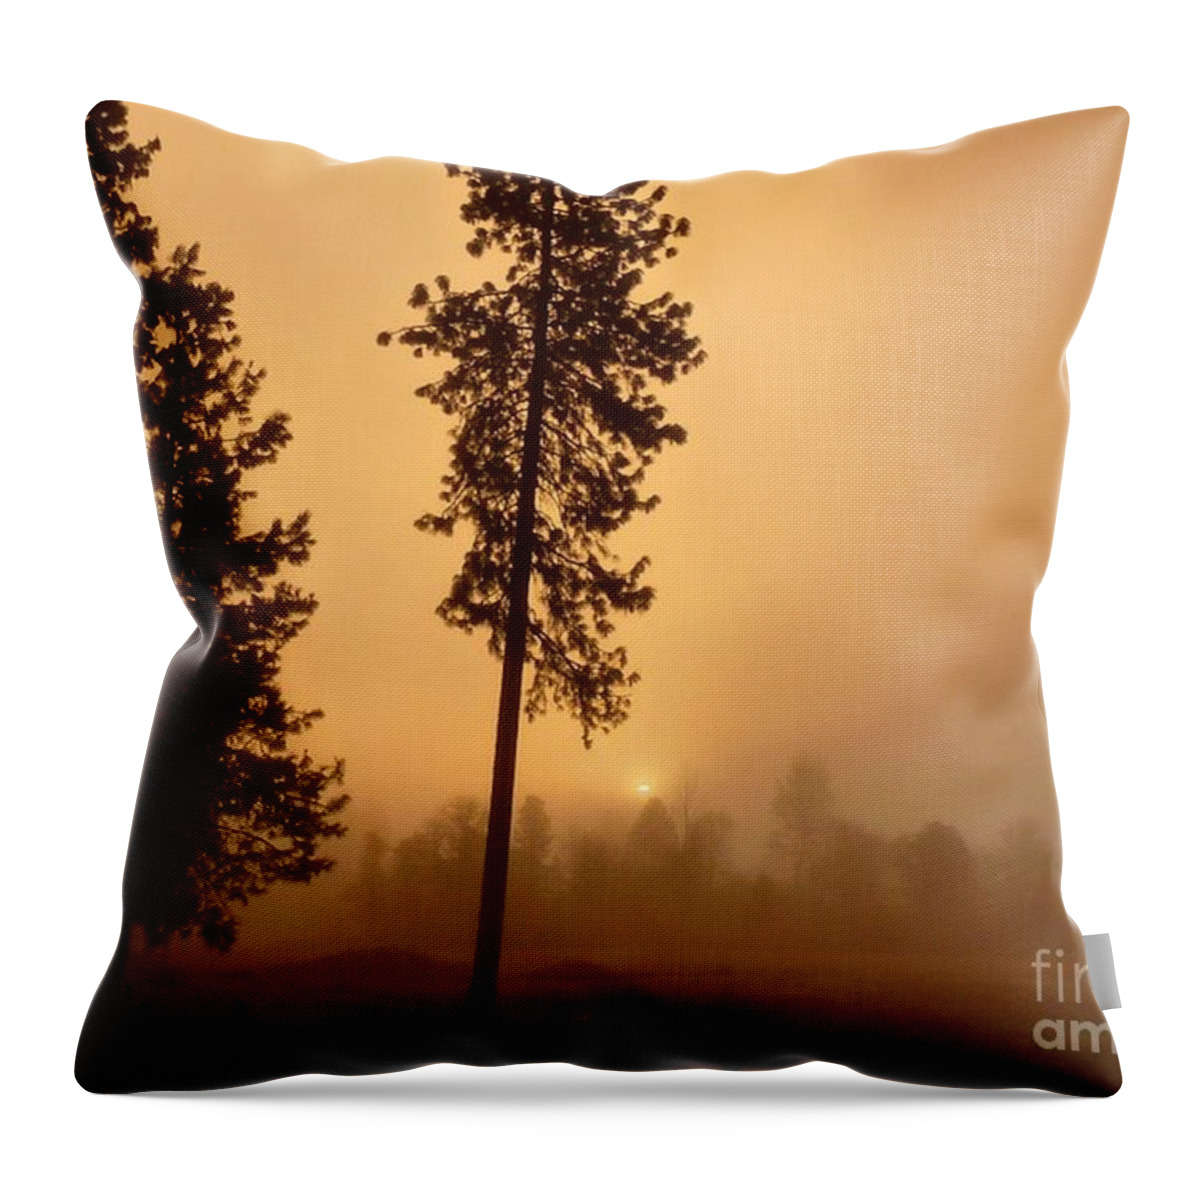 Landscape Throw Pillow featuring the photograph Pumpkin Sunrise by Julia Hassett